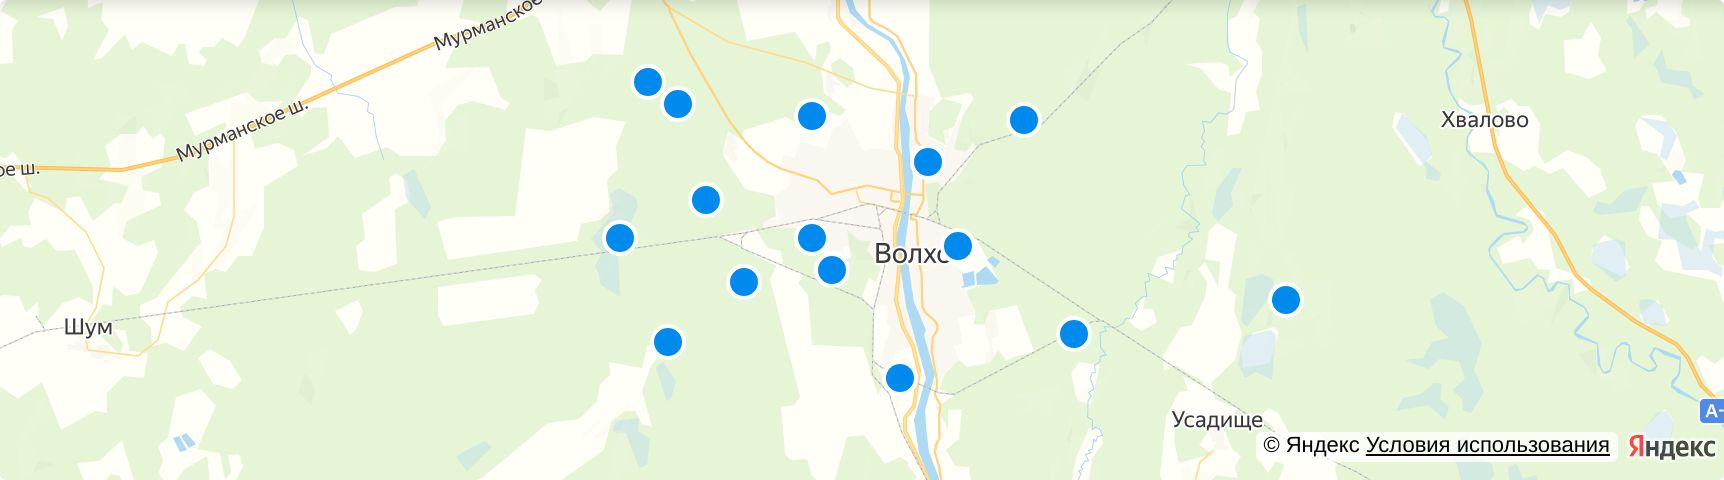 Хвалово Ленинградская область на карте.